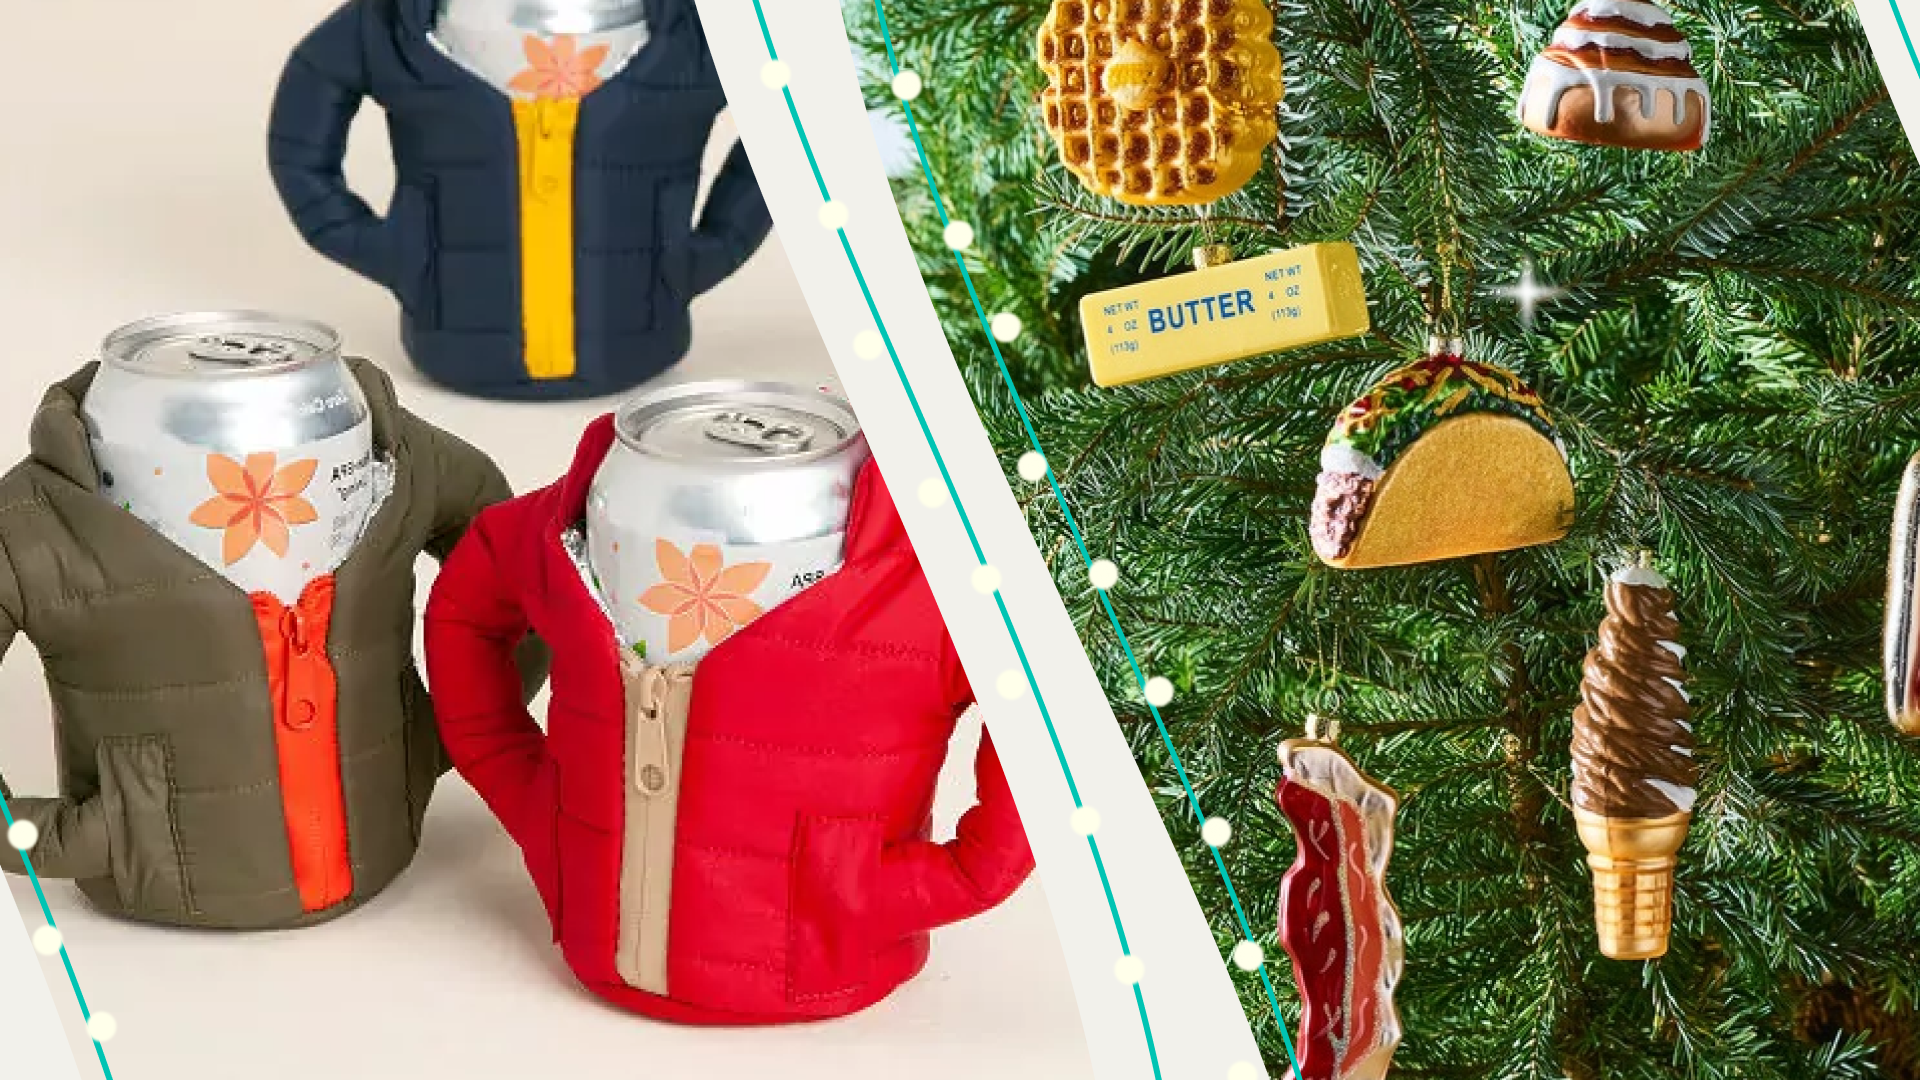 Find amazing Secret Santa or white elephant gifts under $30 on